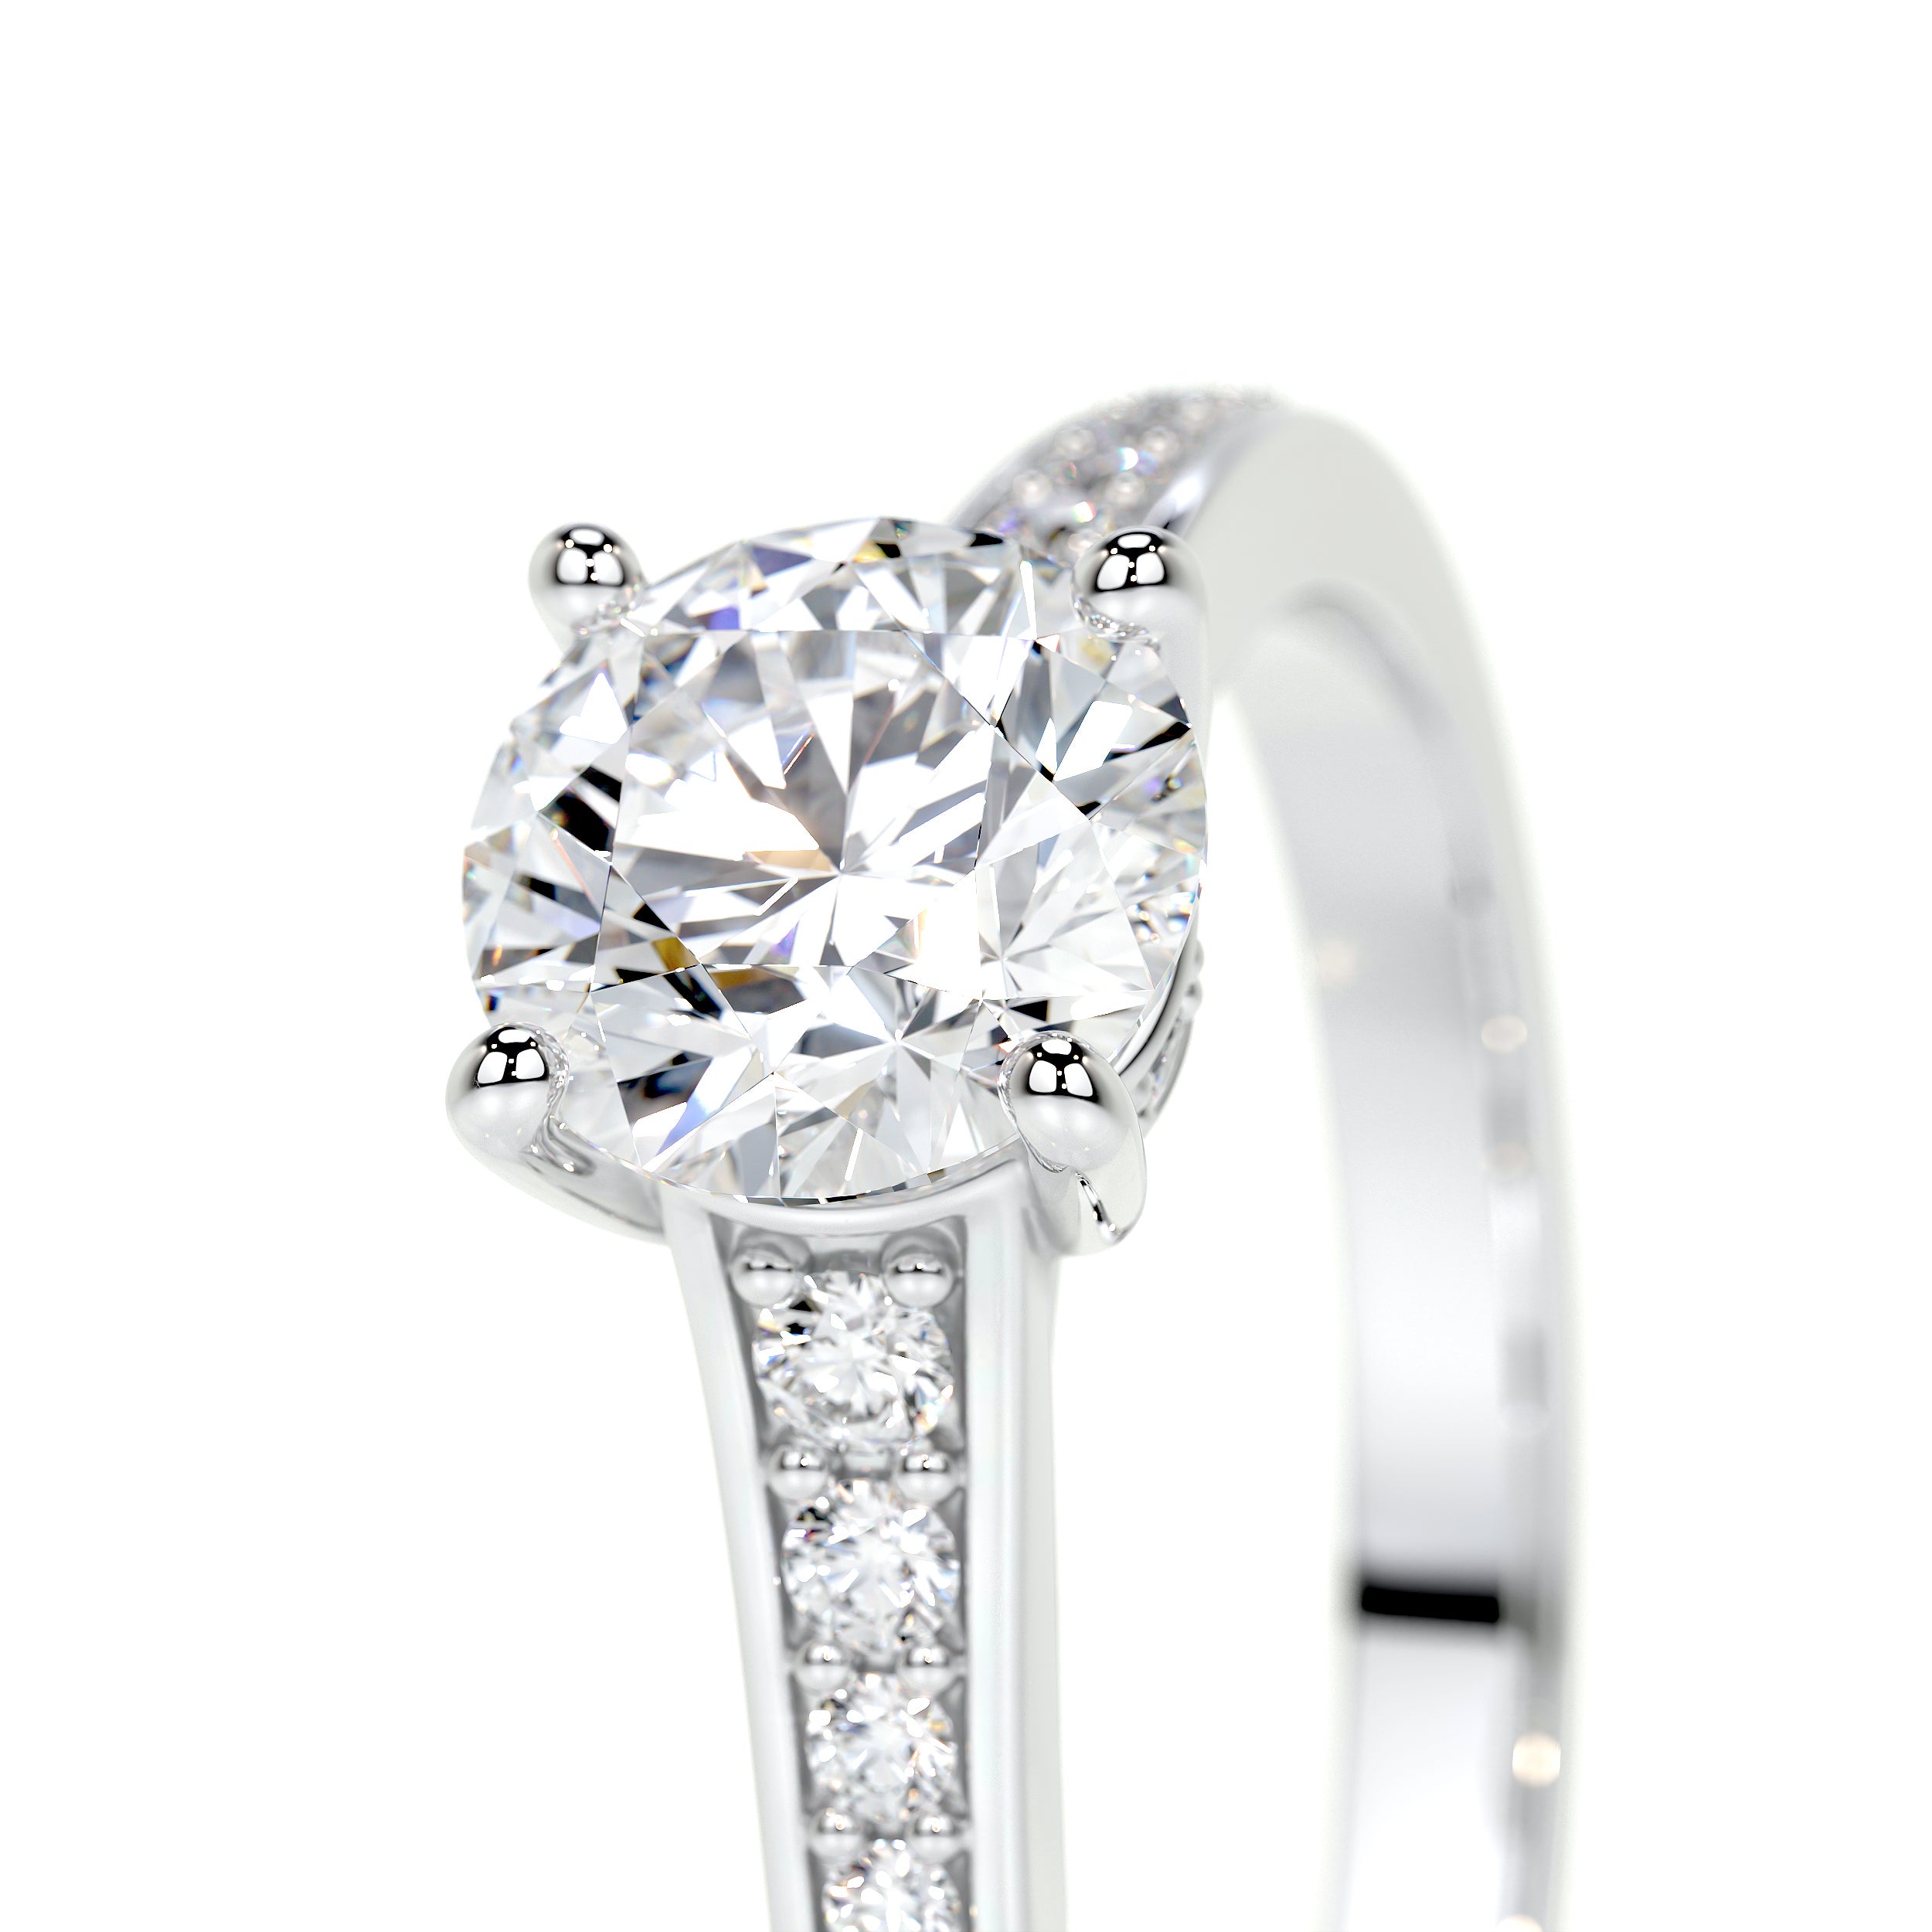 Lily Lab Grown Diamond Ring   (1.00 Carat) -14K White Gold